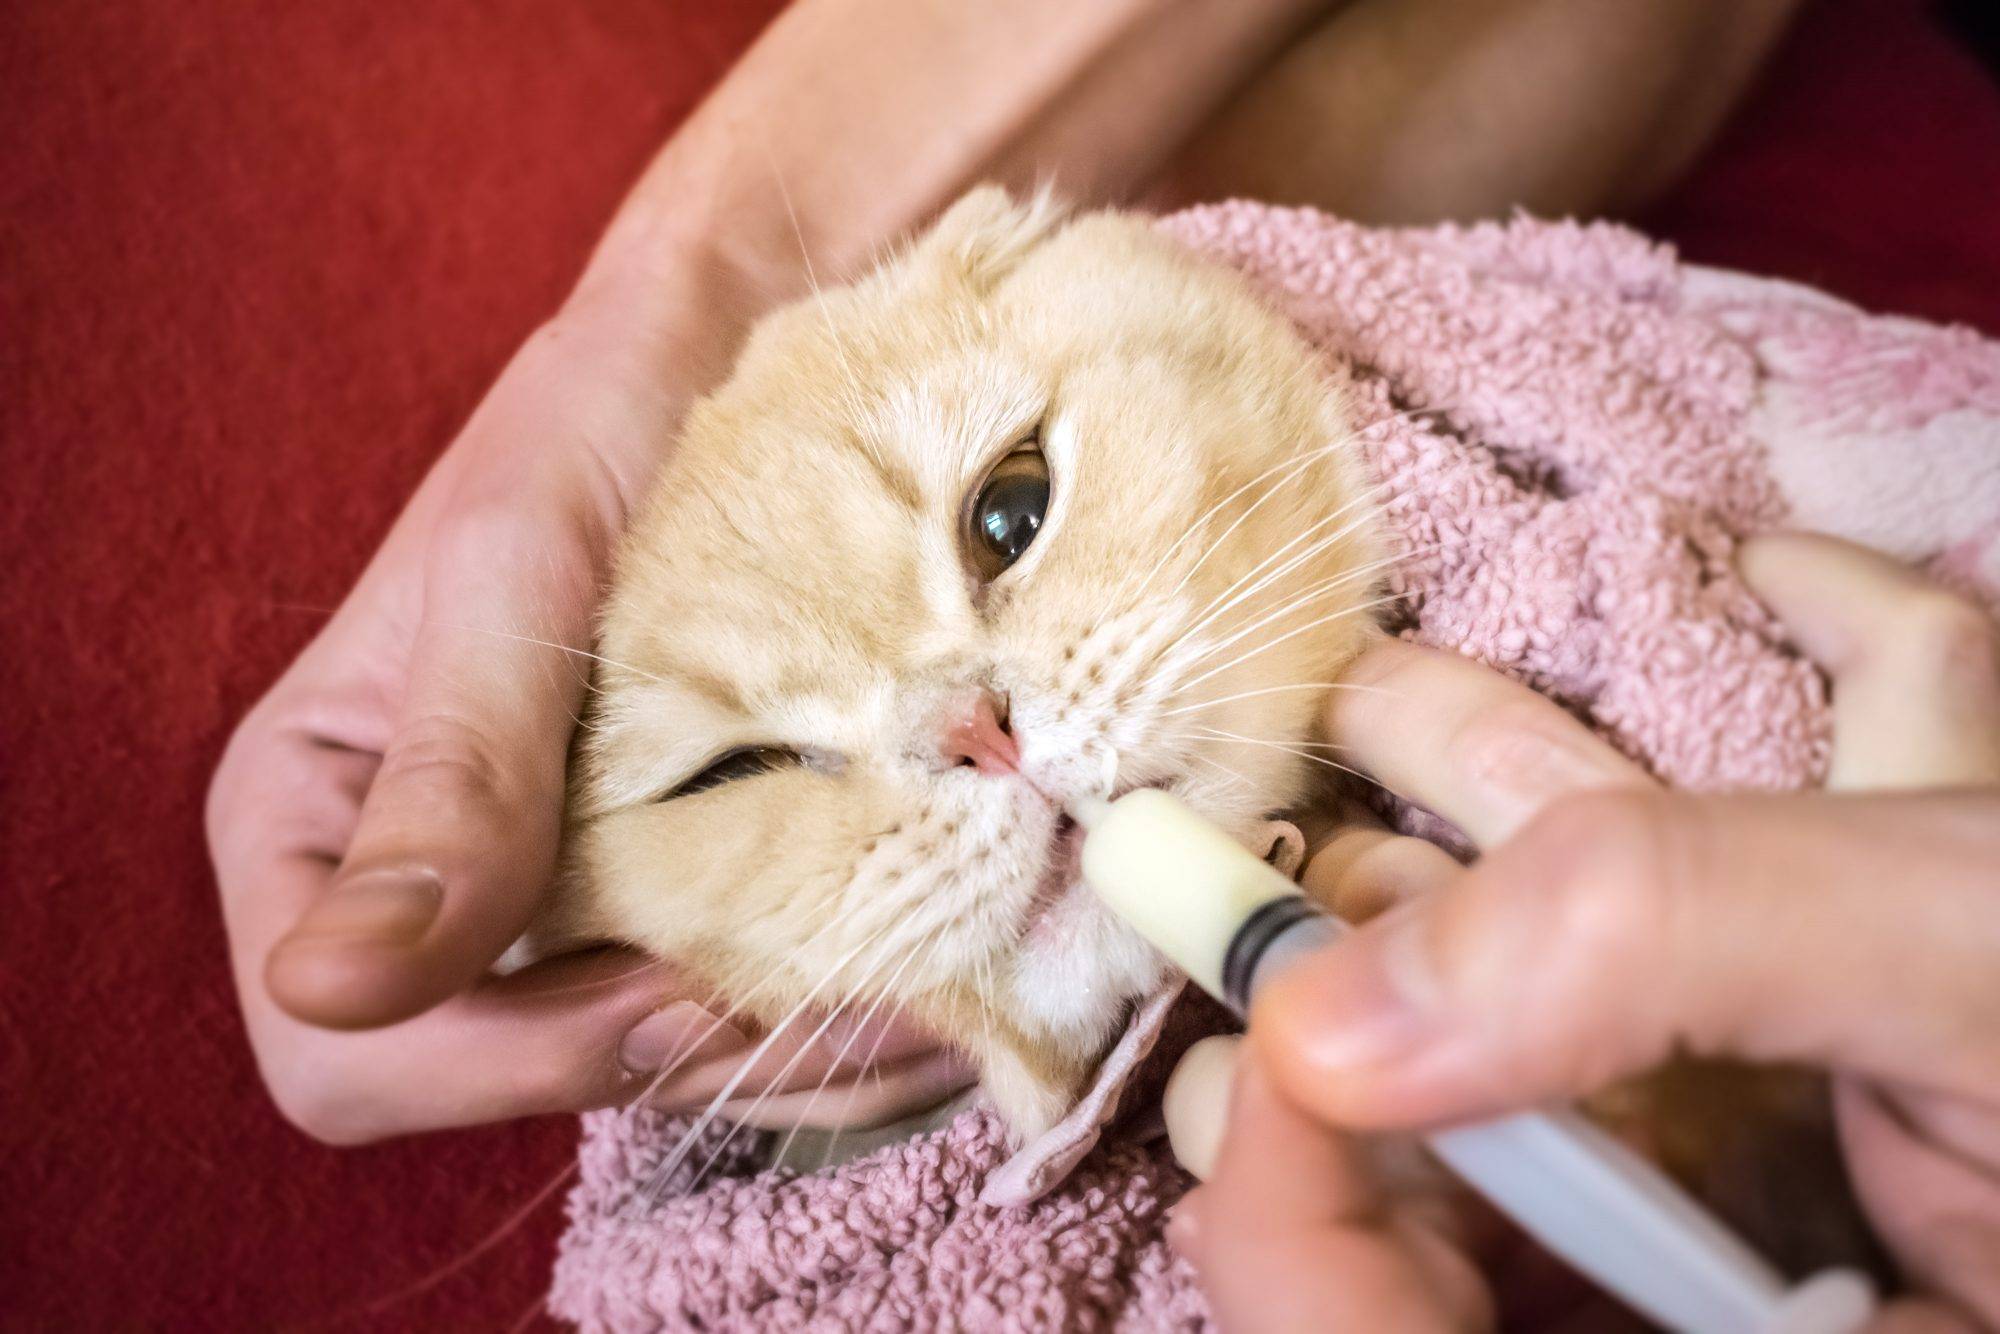 Можно ли и как промыть нос кошке физраствором